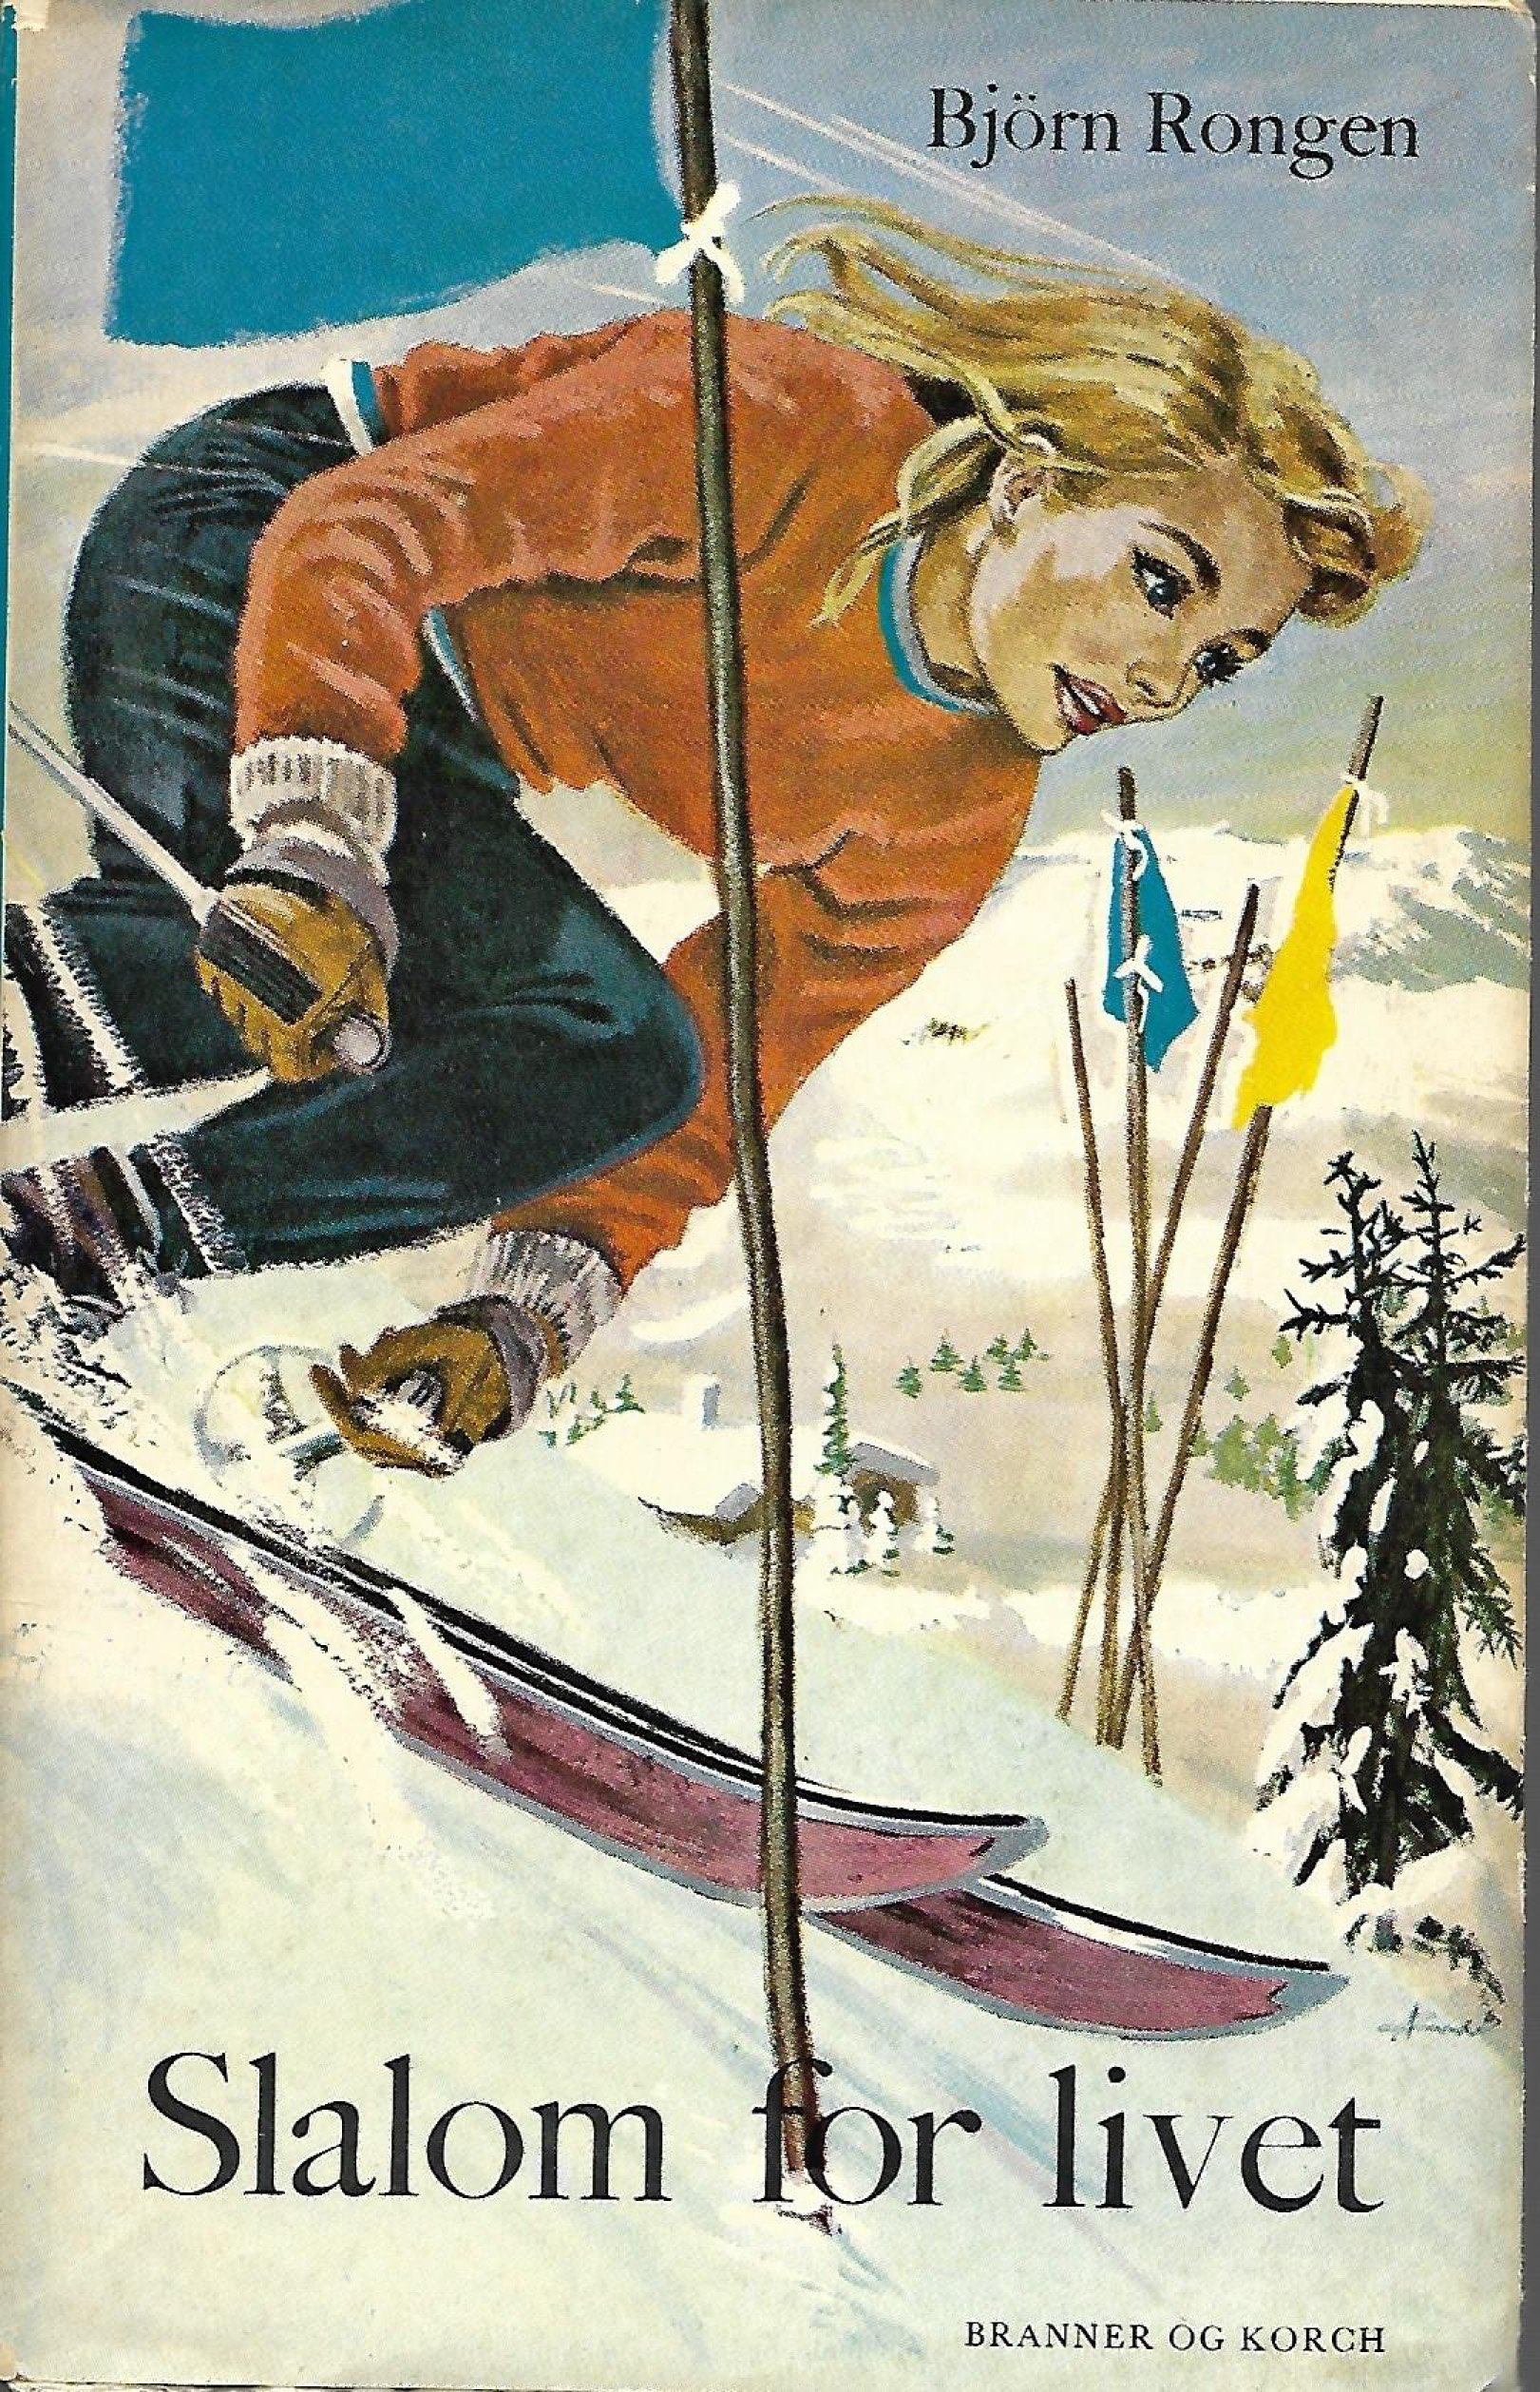 Slalom for livet - Björn Rongen - 1962-1